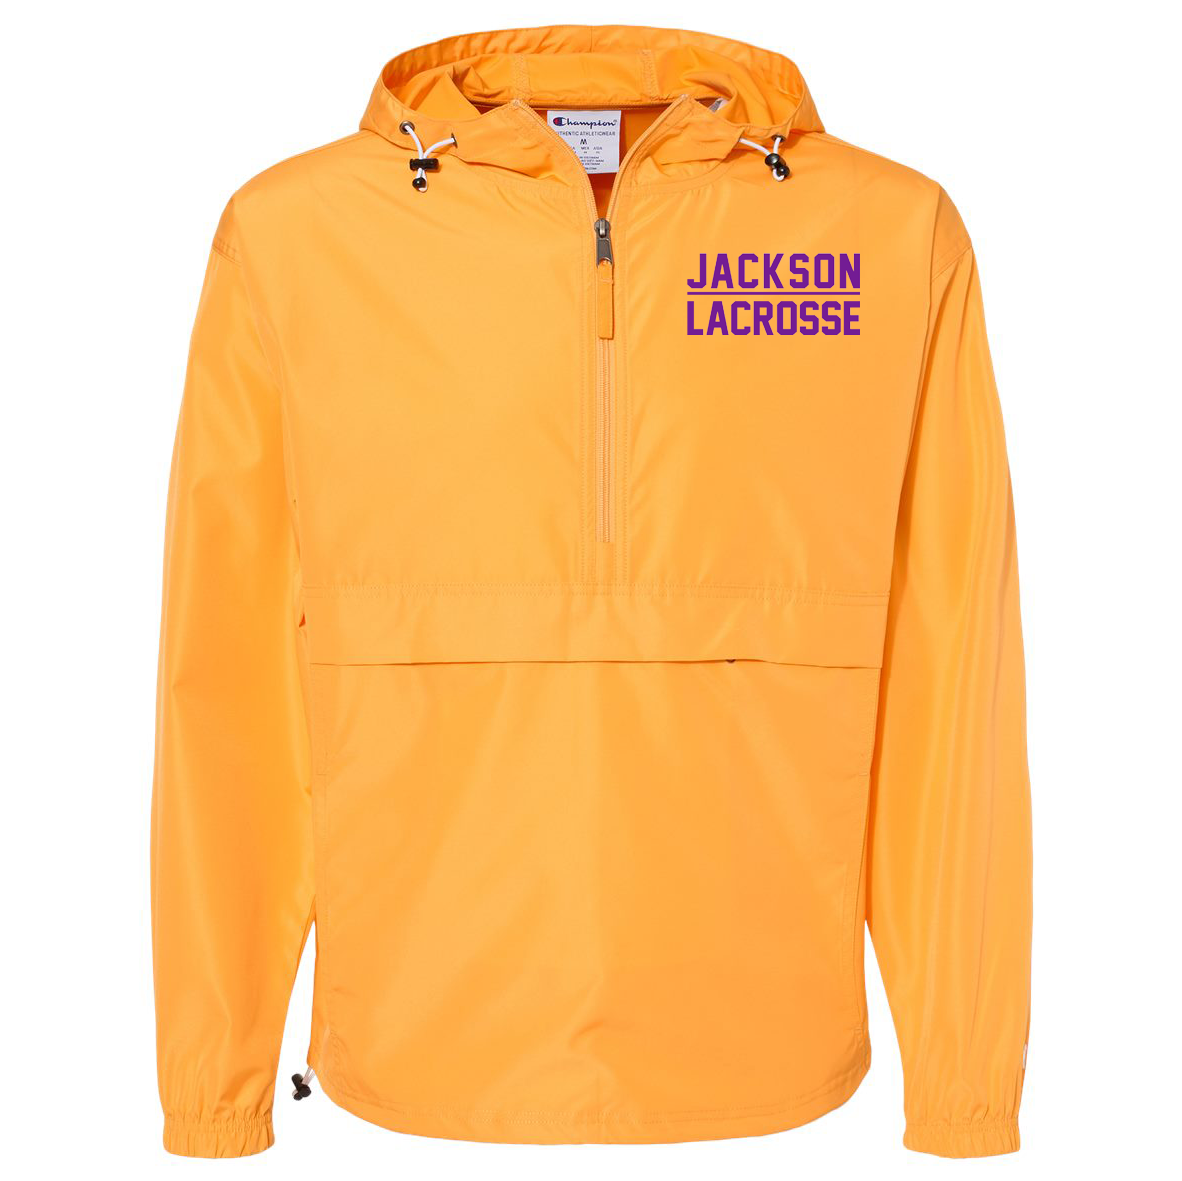 Jackson Lacrosse Champion Packable Quarter Zip Jacket